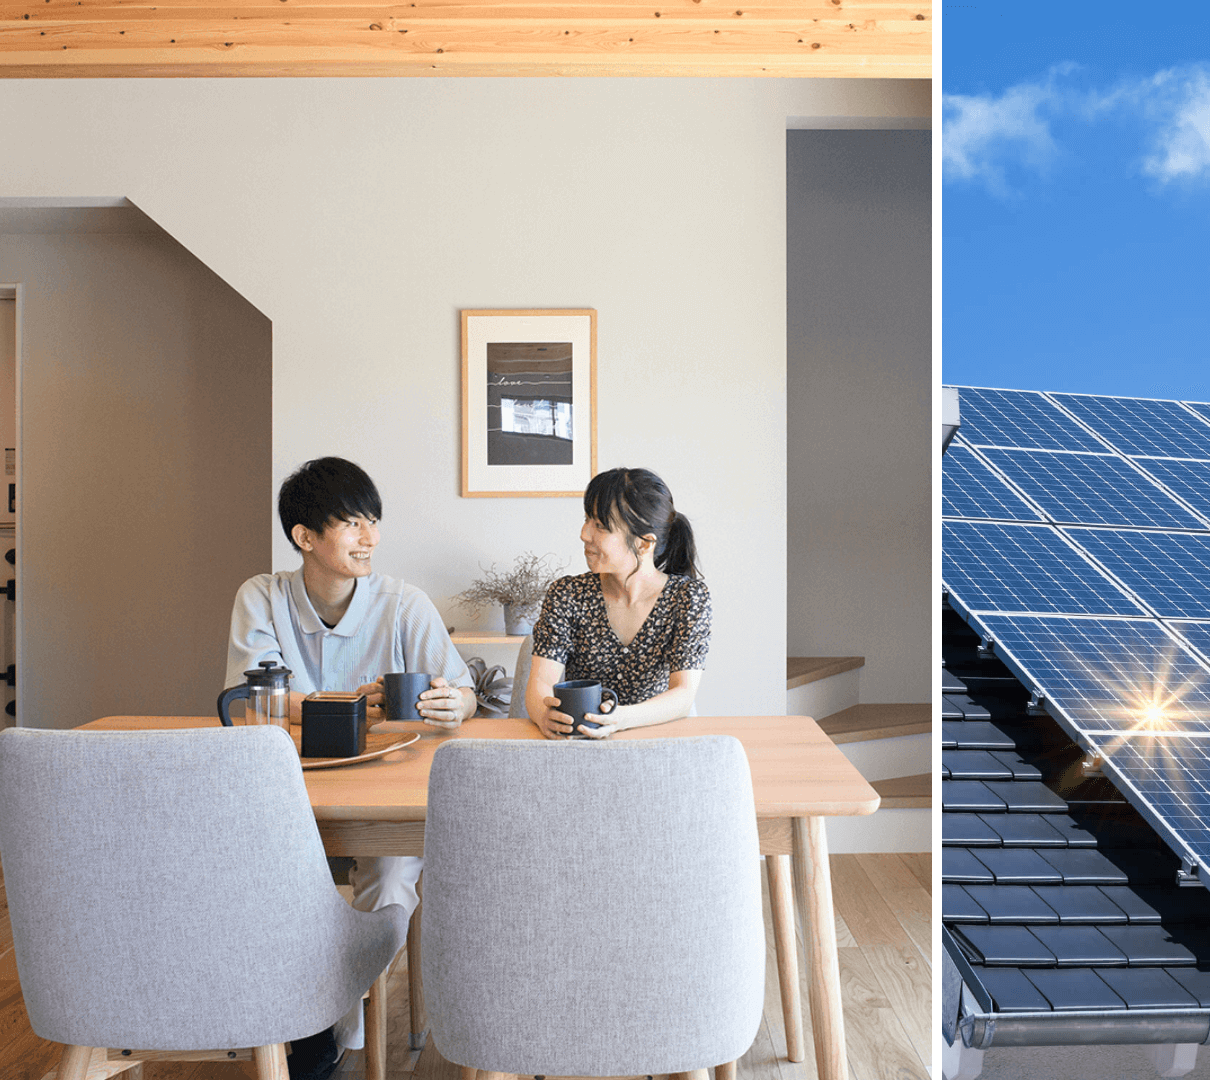 光熱費を抑えつつ永く快適な暮らしを守る太陽光発電の家